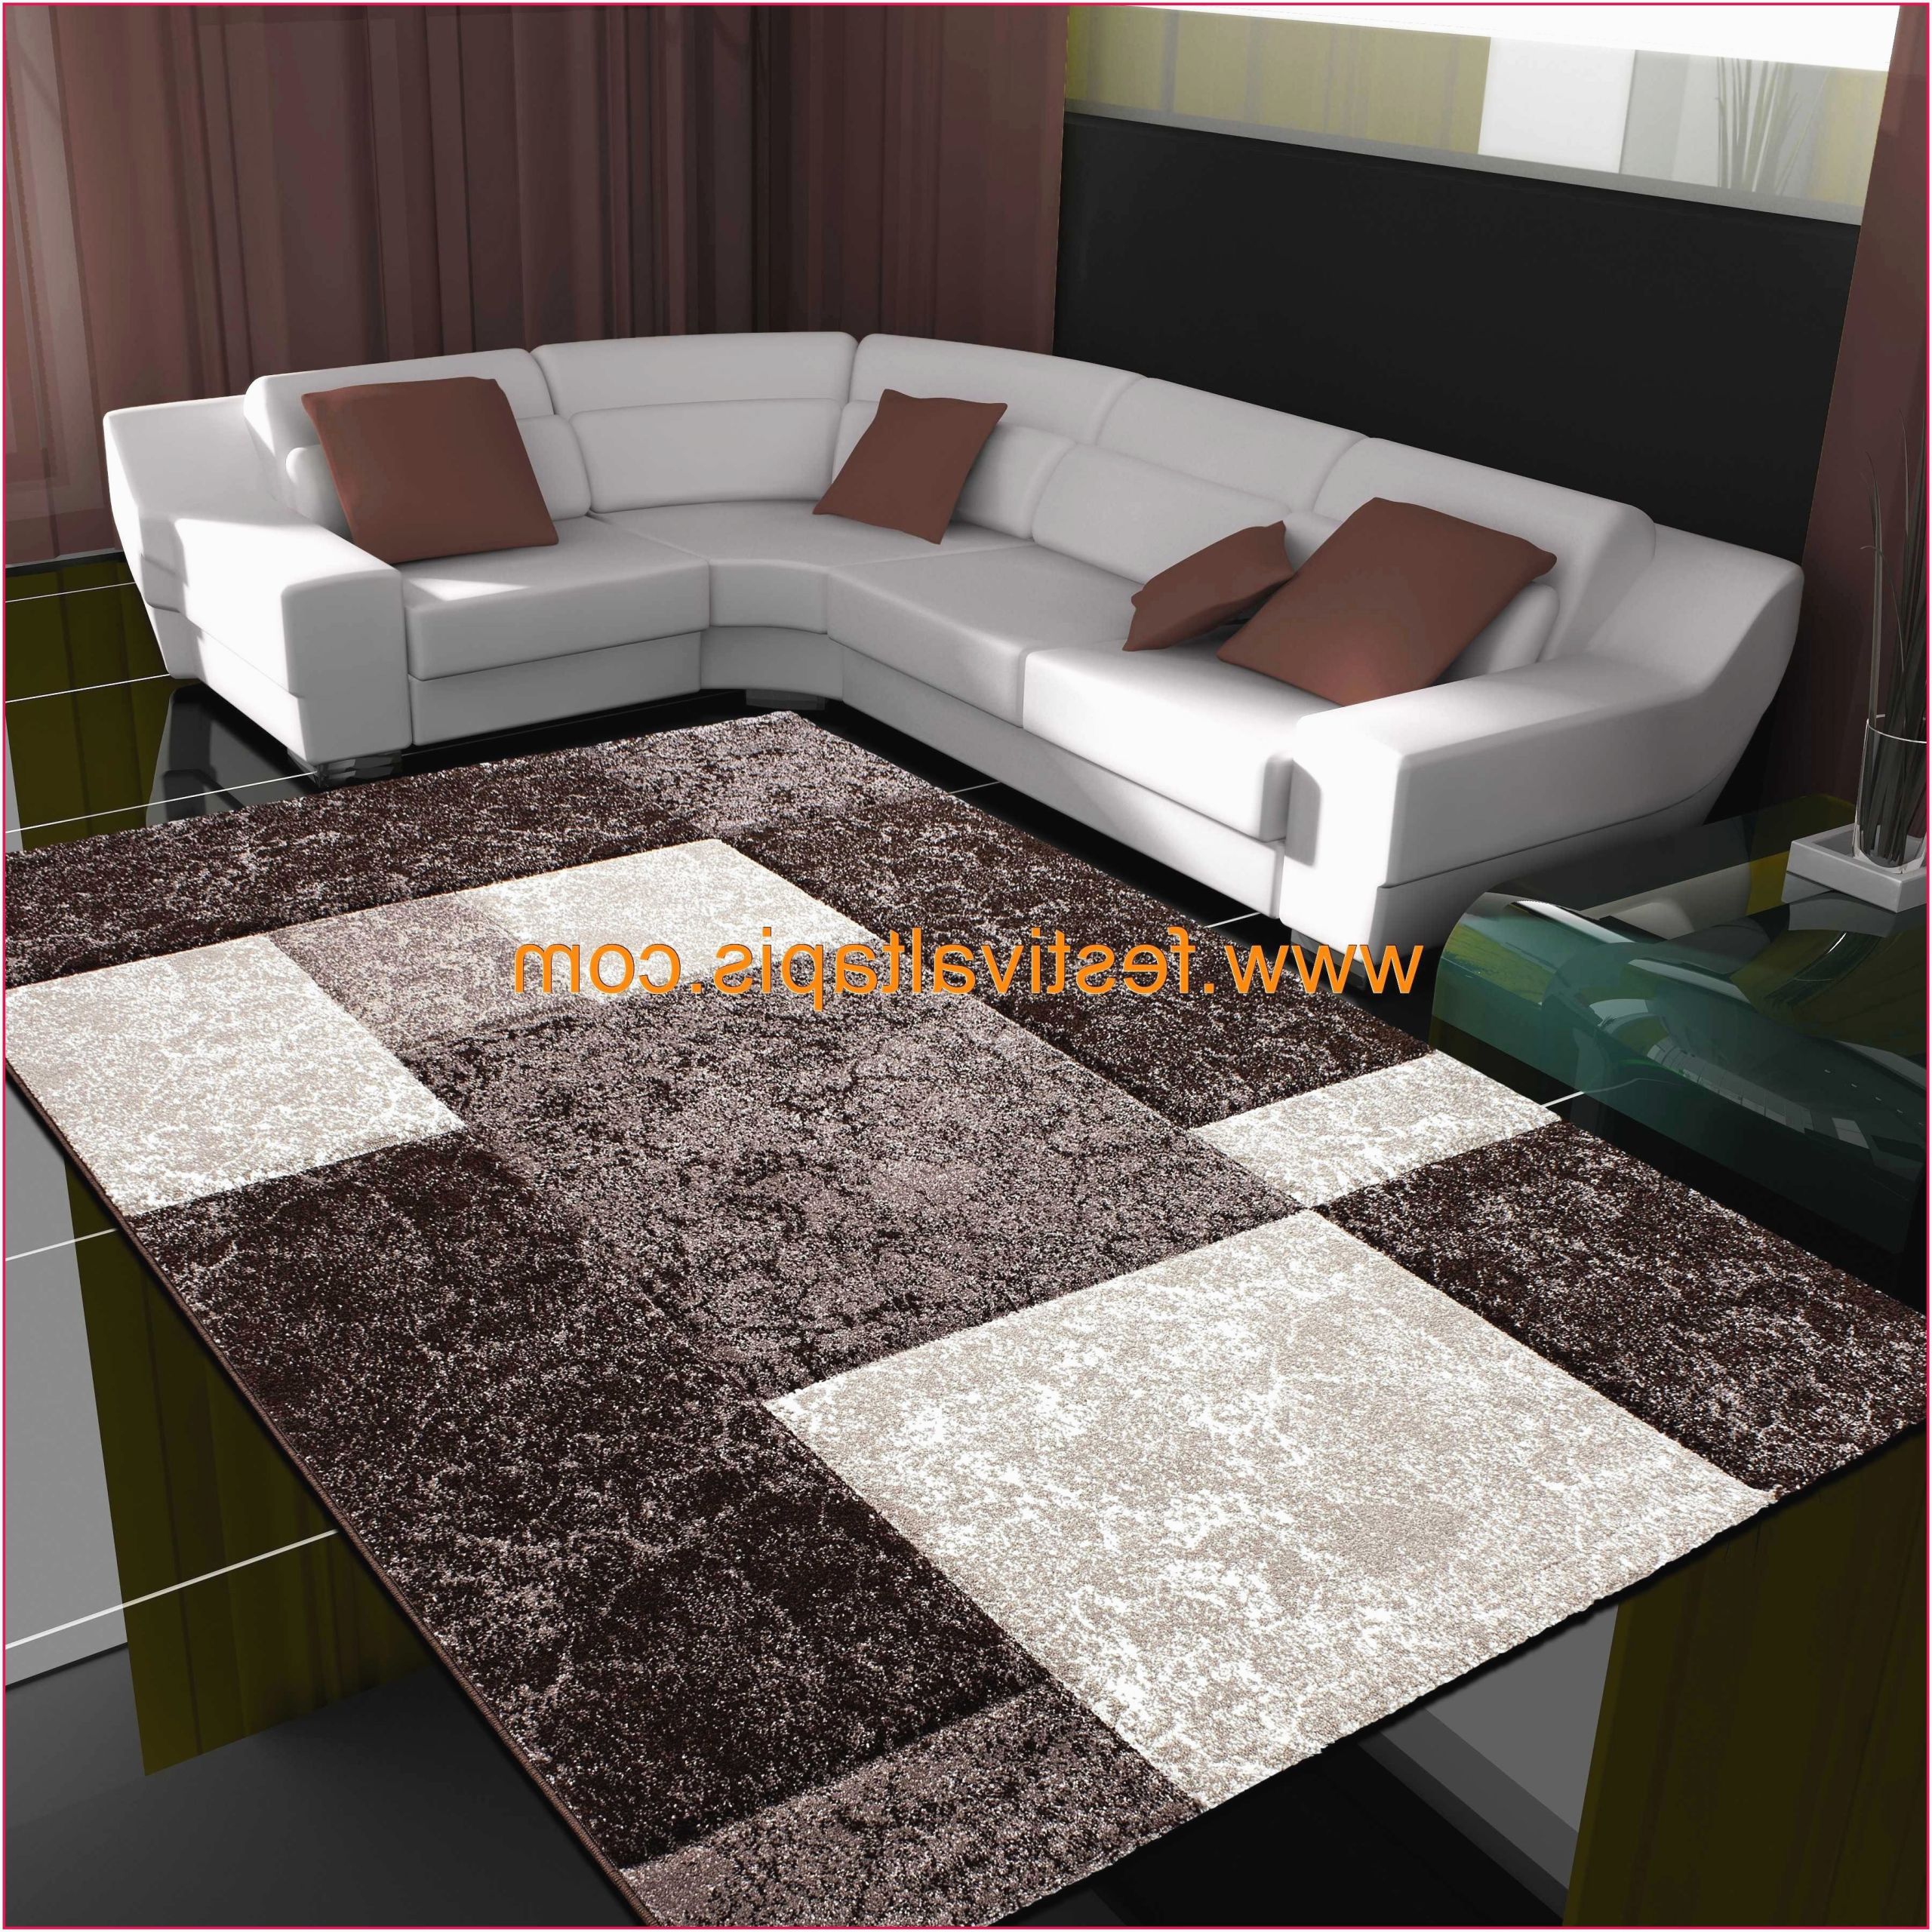 meuble de sejour meuble sejour conforama meuble salon concepts conforama meuble salon of meuble de sejour